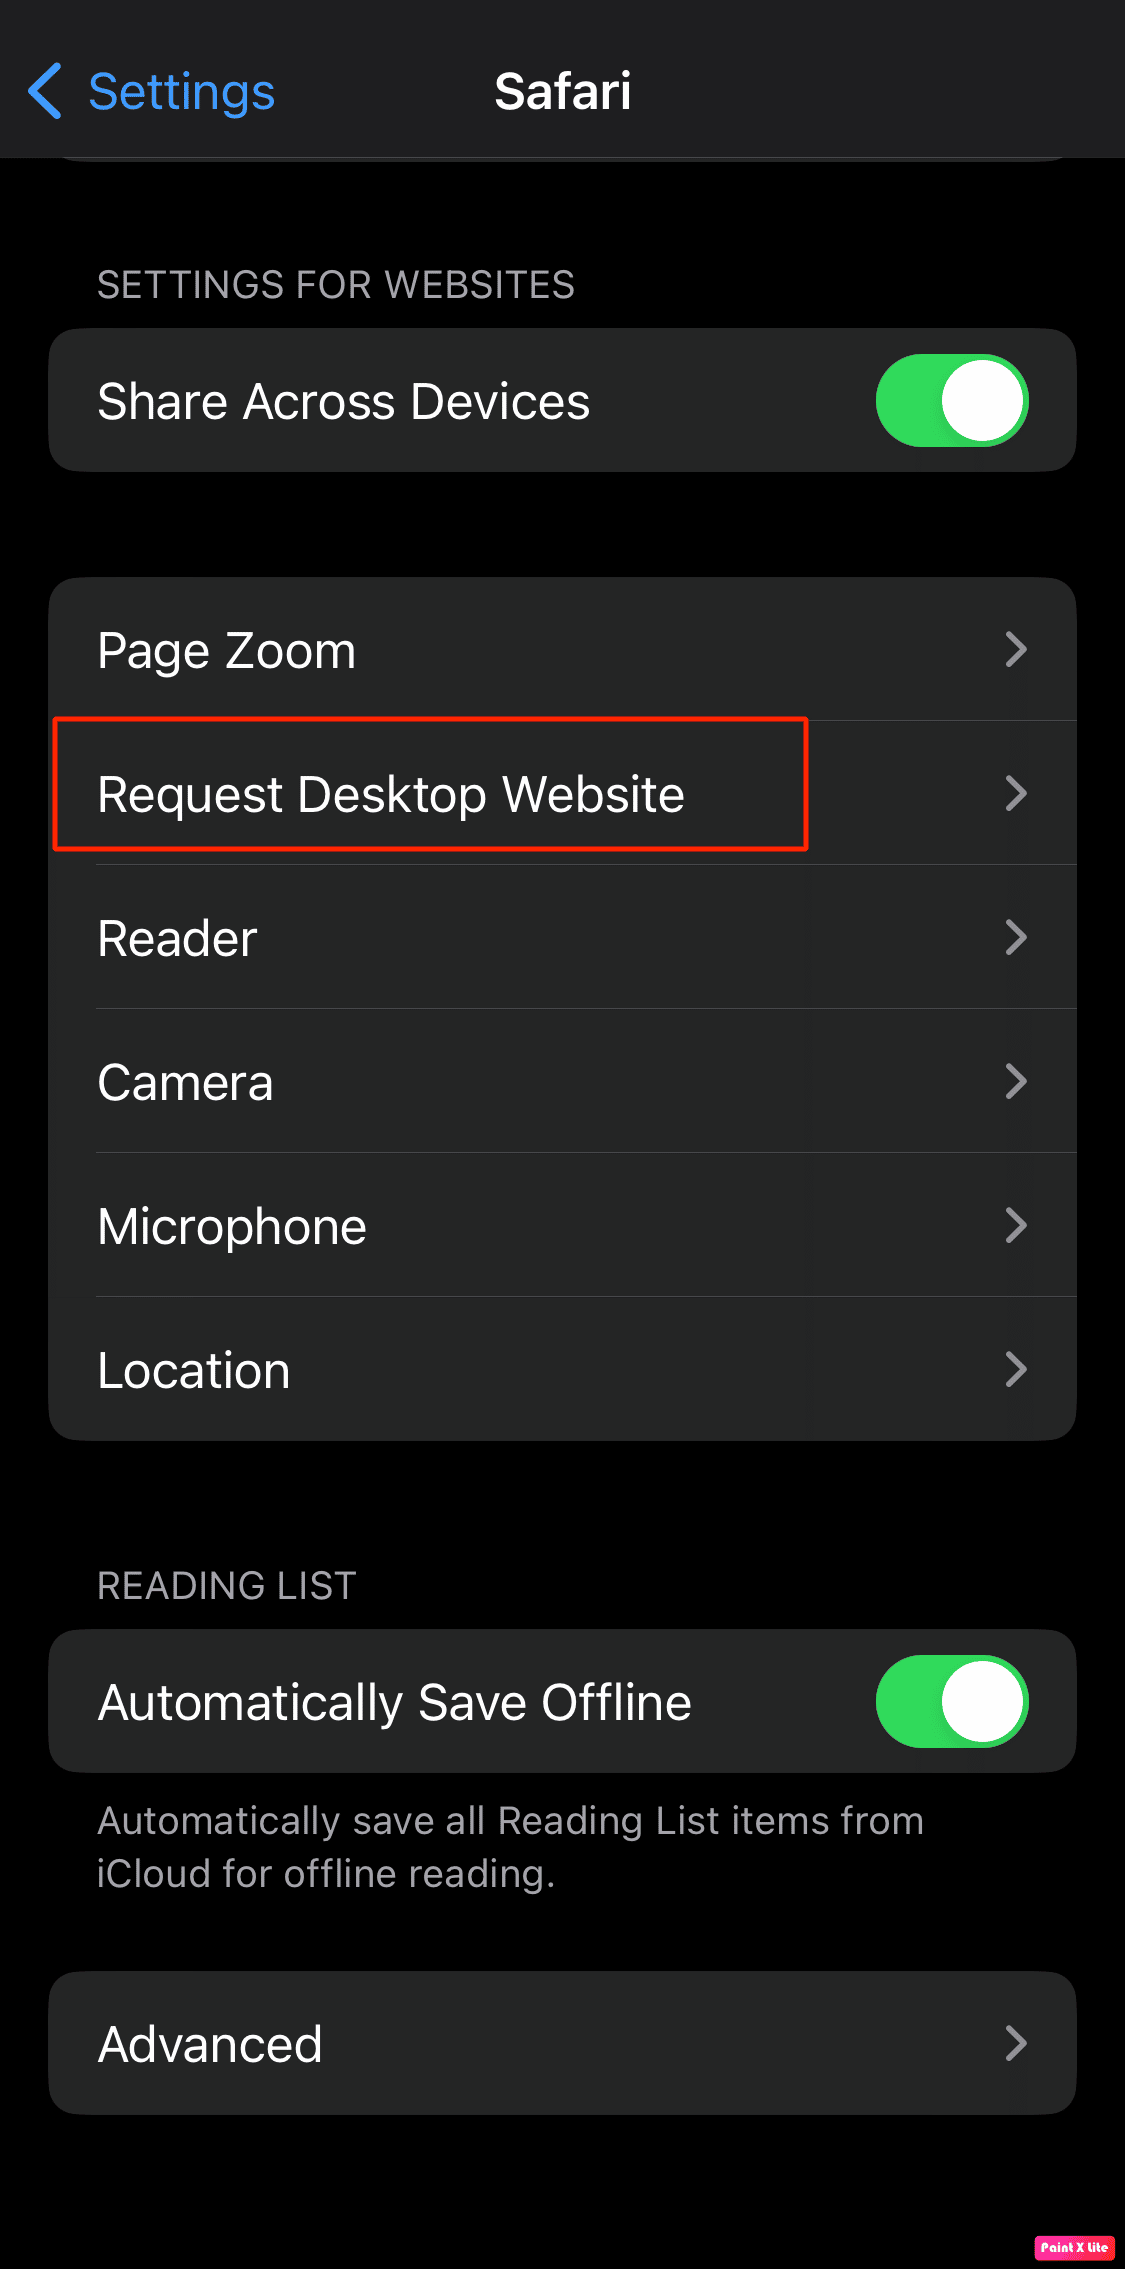 select request desktop website